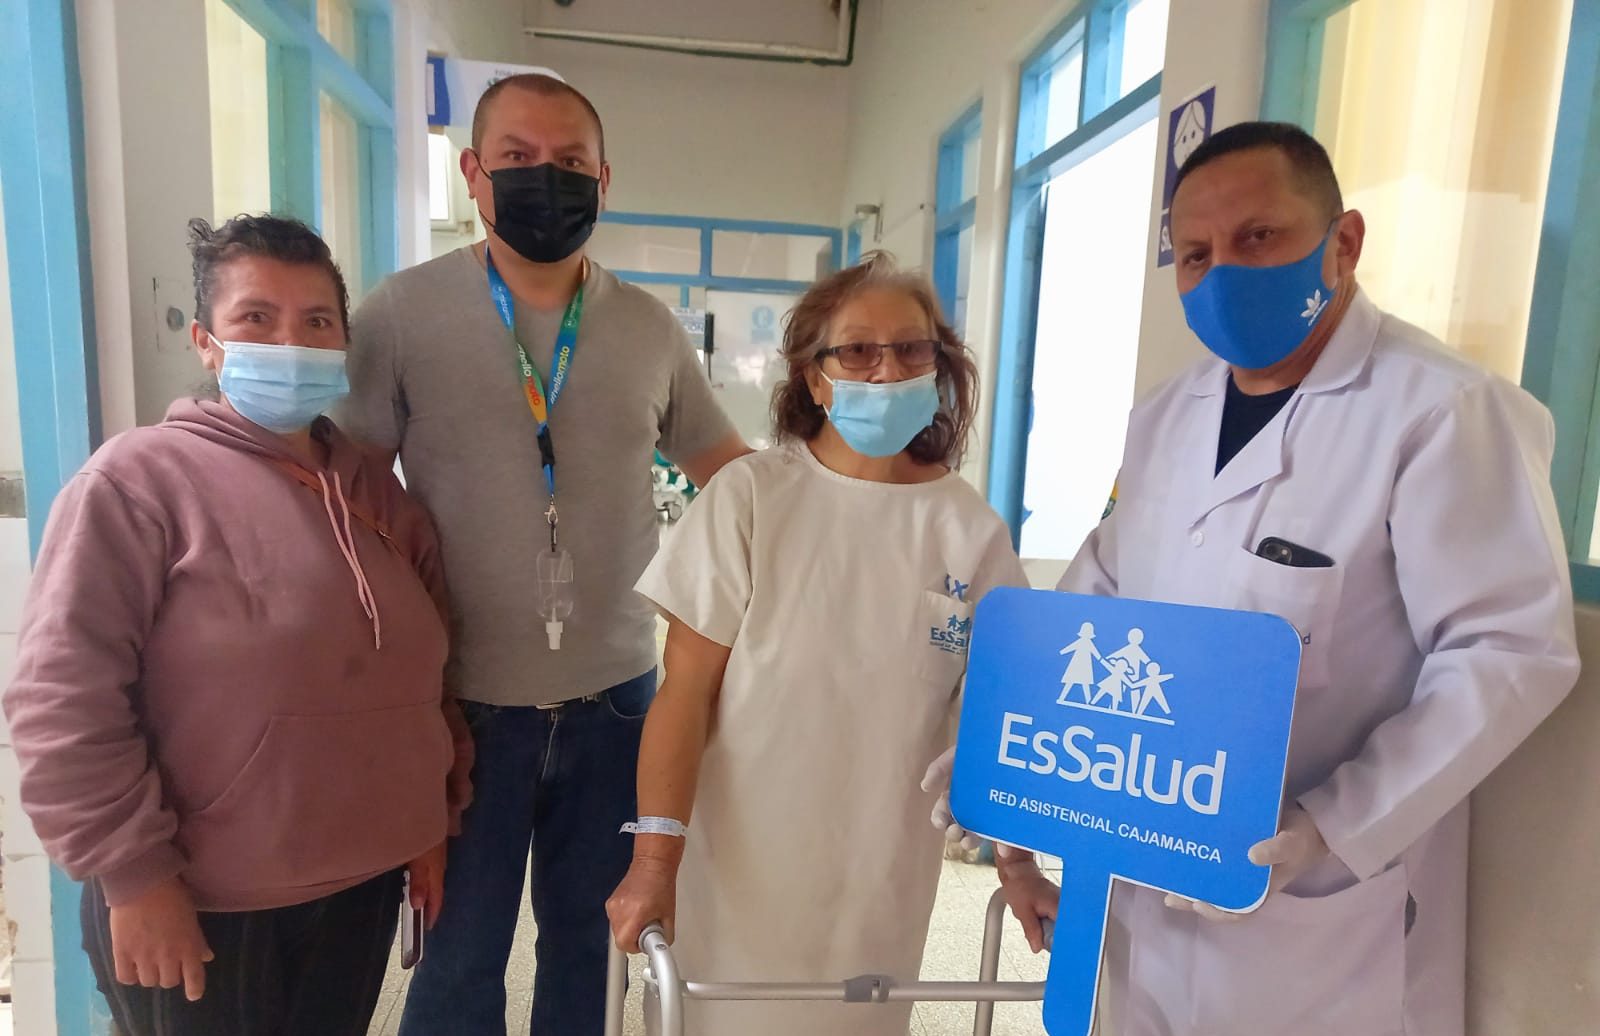 Essalud - EsSalud Cajamarca: abuela de 12 nietos volverá a caminar gracias a prótesis